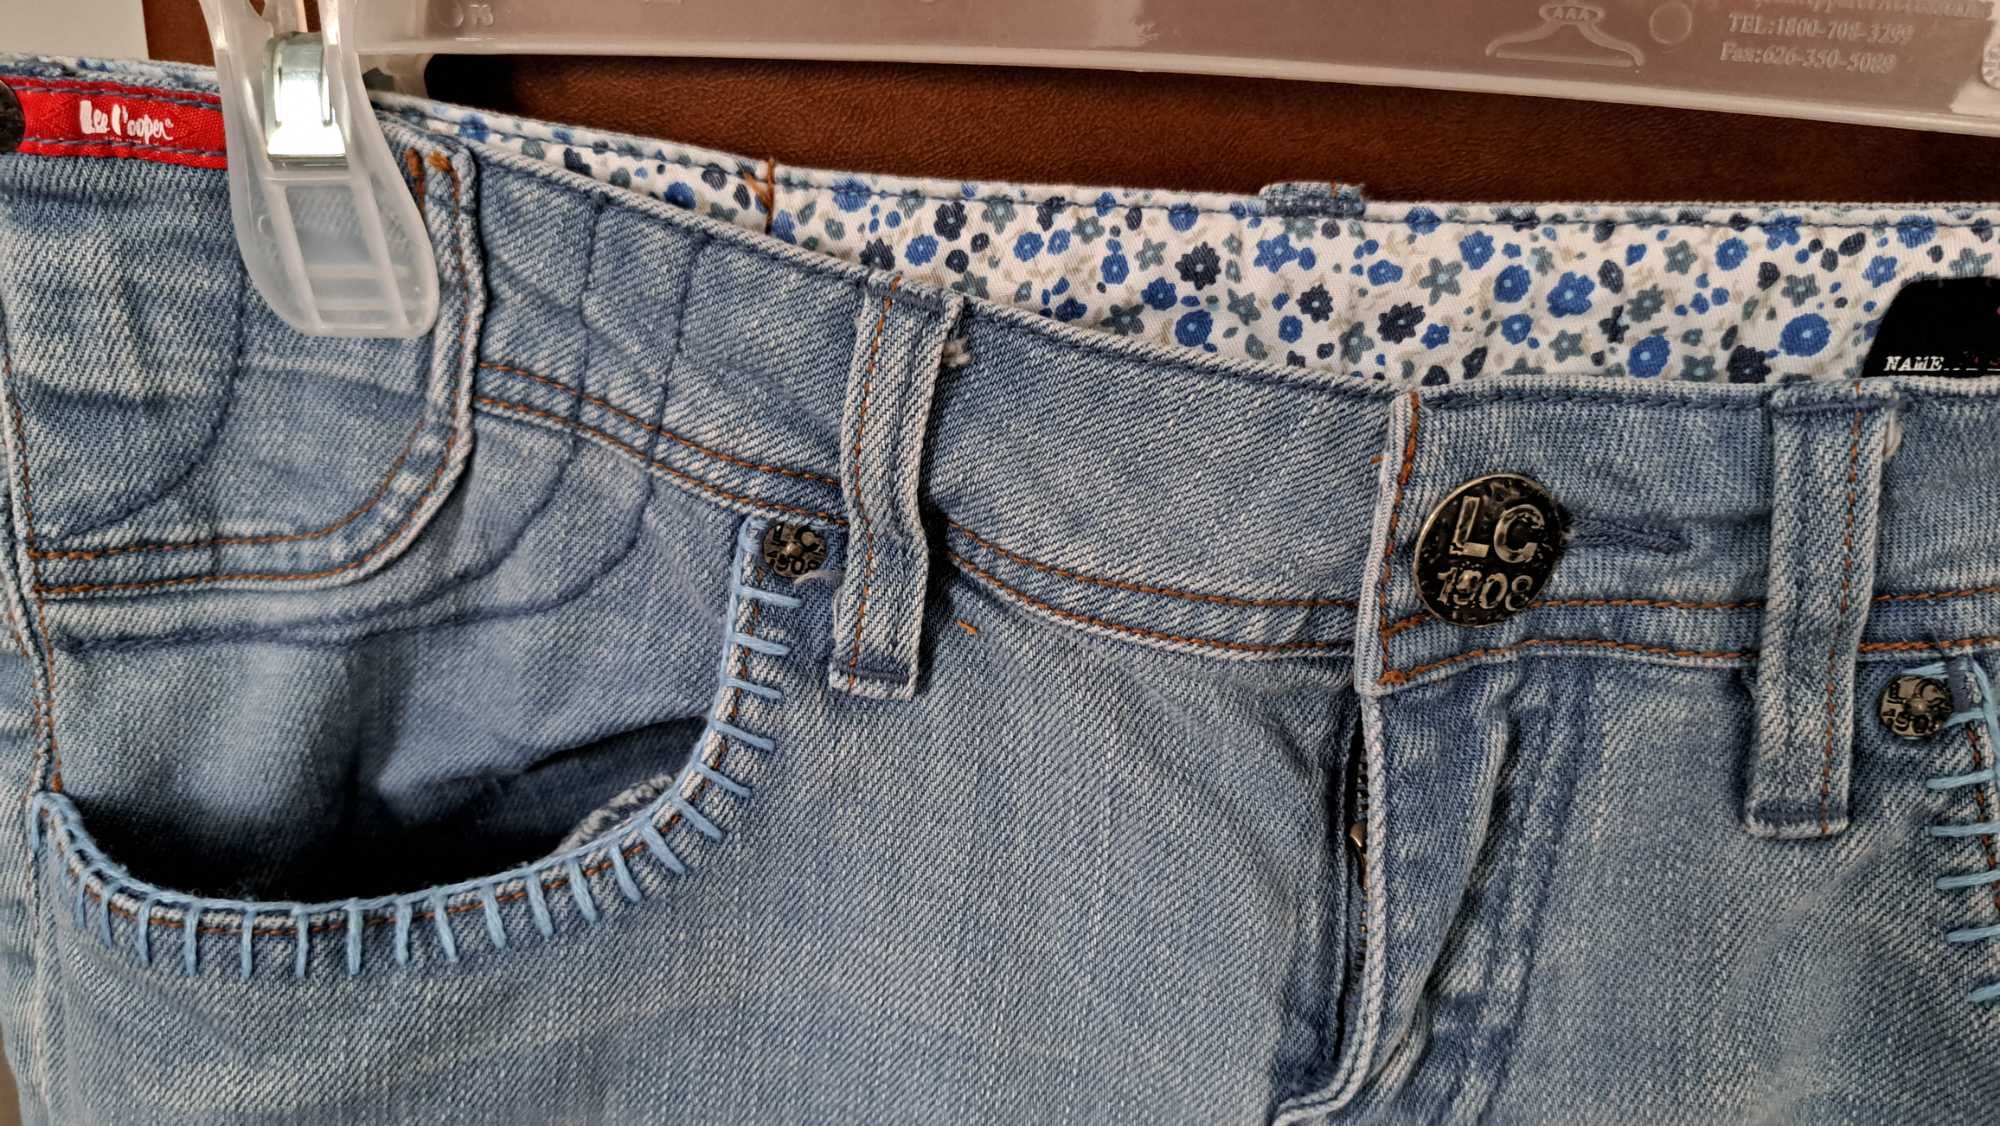 Spodnie jeans LEE COOPER rozmiar W 29 L 32 niski stan